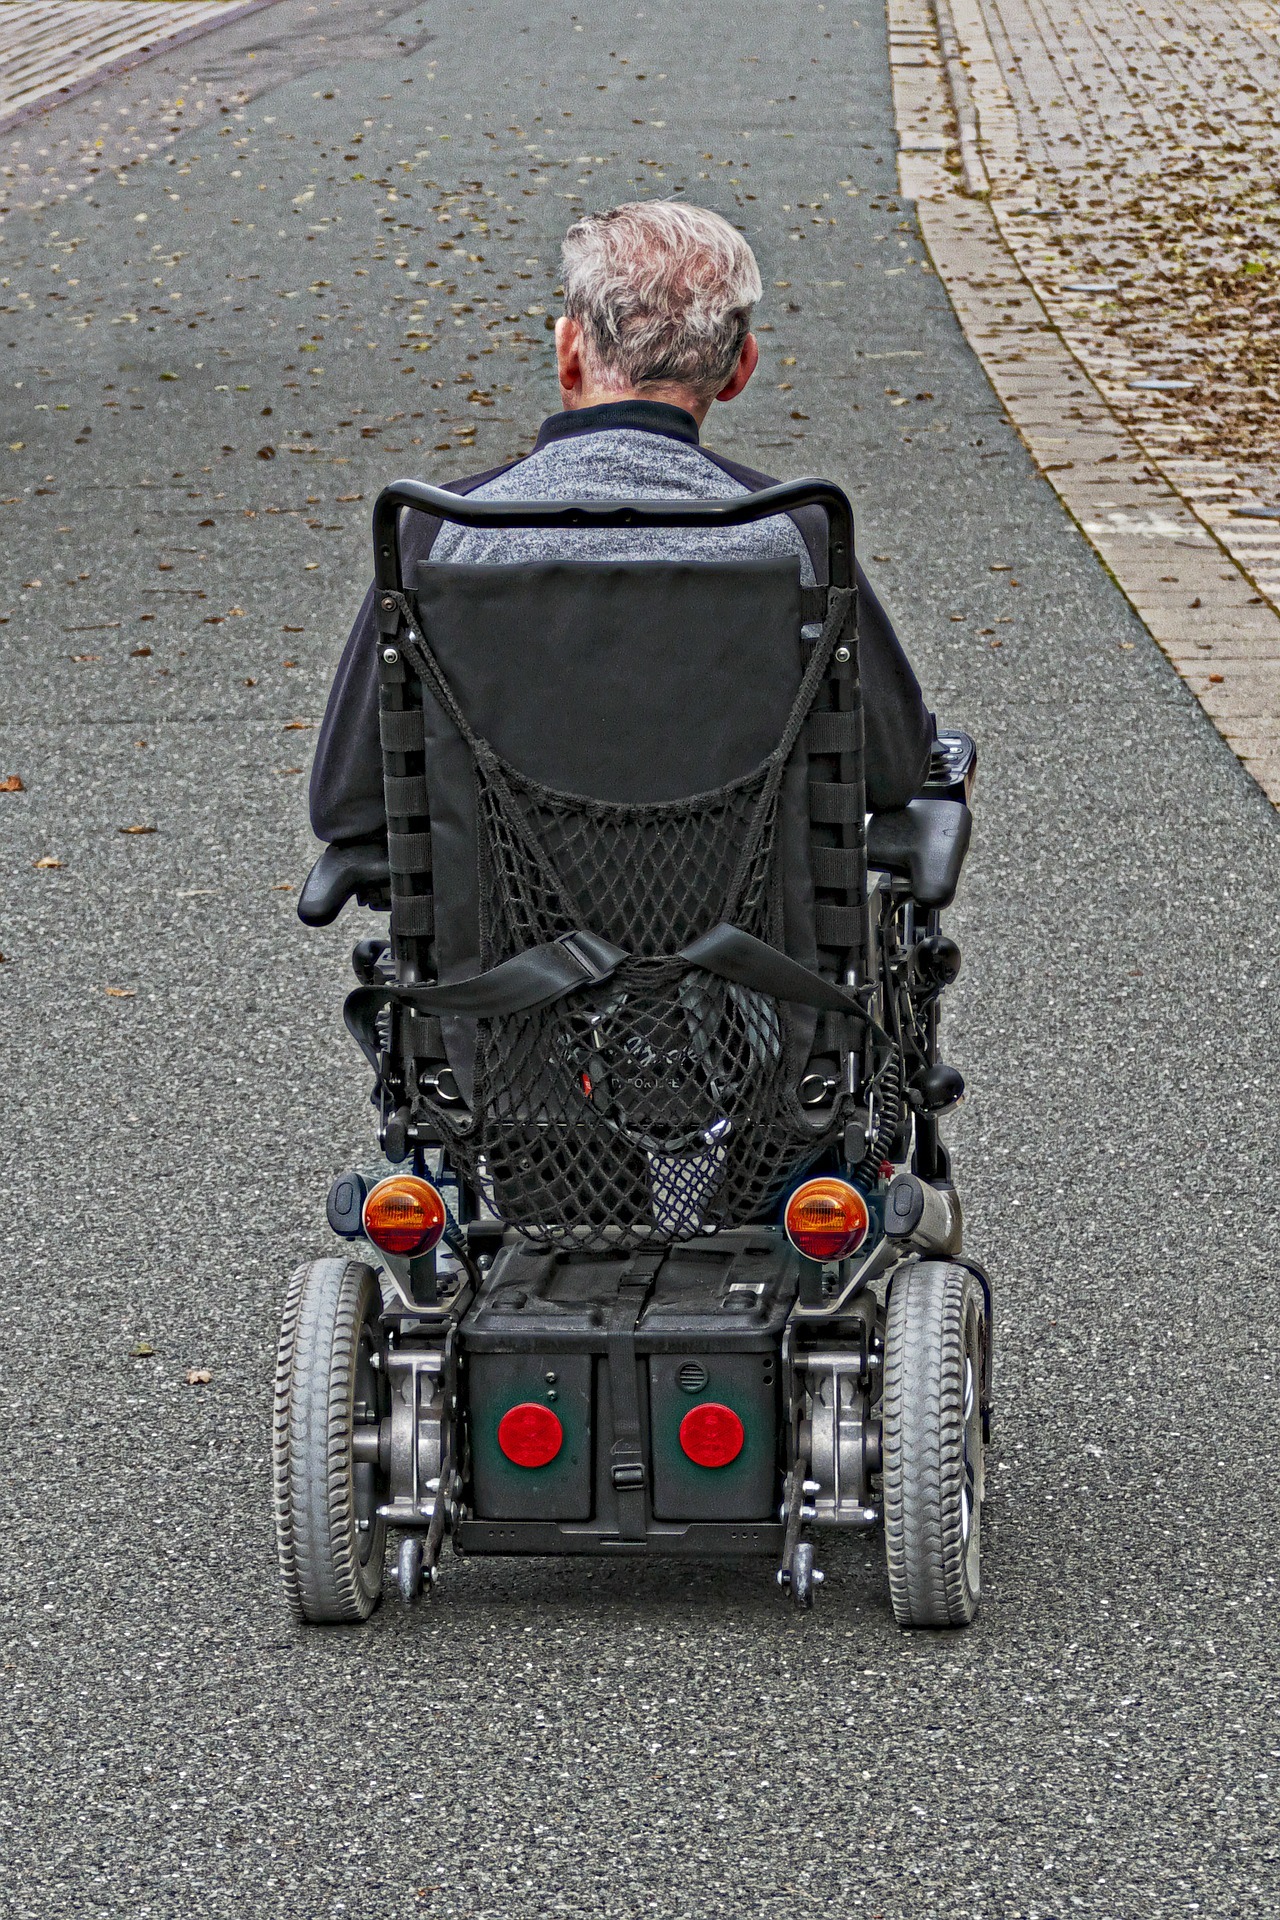 Seguridad y movilidad, claves en el mantenimiento de una silla de ruedas